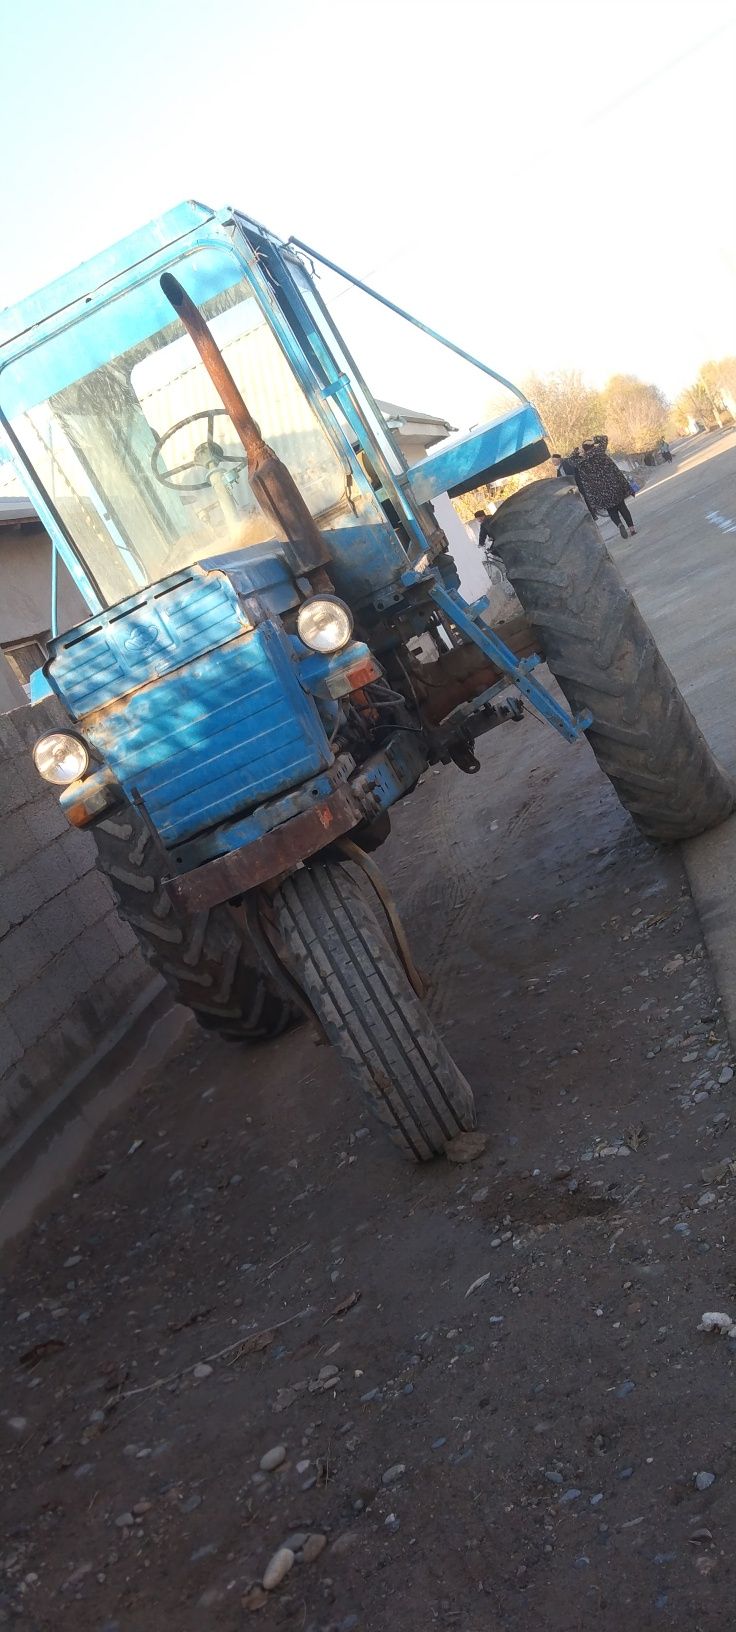 Traktor surishni sotiladi holati yaxshi akmlyatori yuq